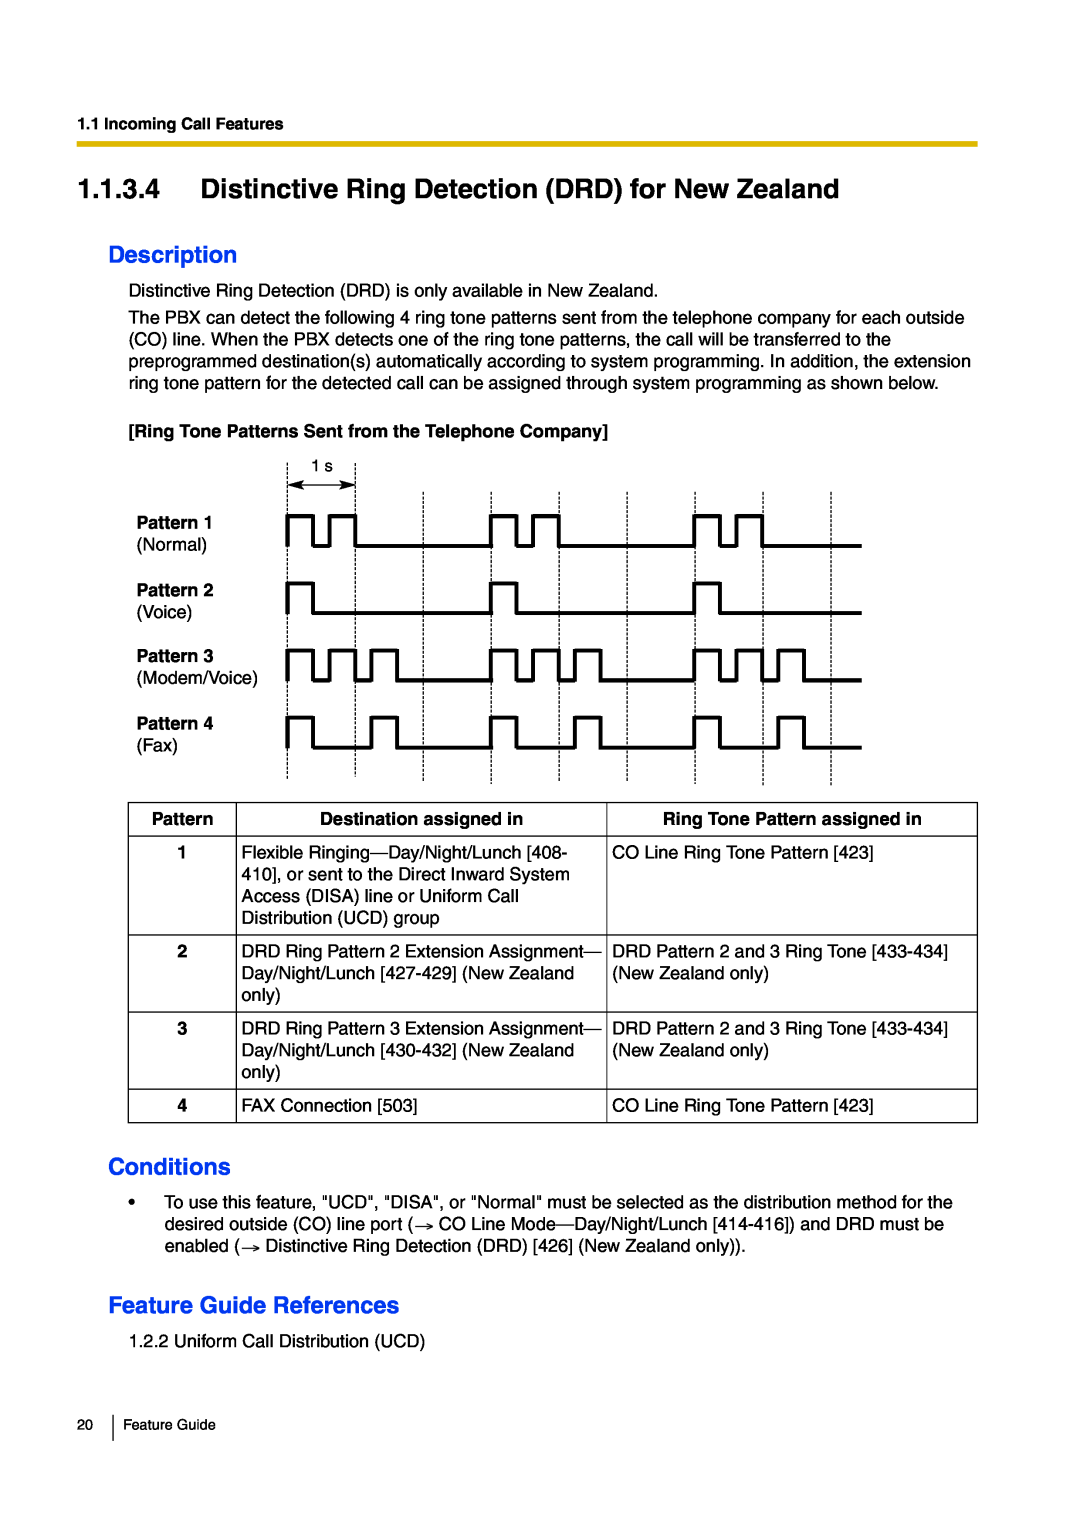 Panasonic kx-tea308 manual Description, Conditions, Feature Guide References, Pattern 2 Voice Pattern 3 Modem/Voice 